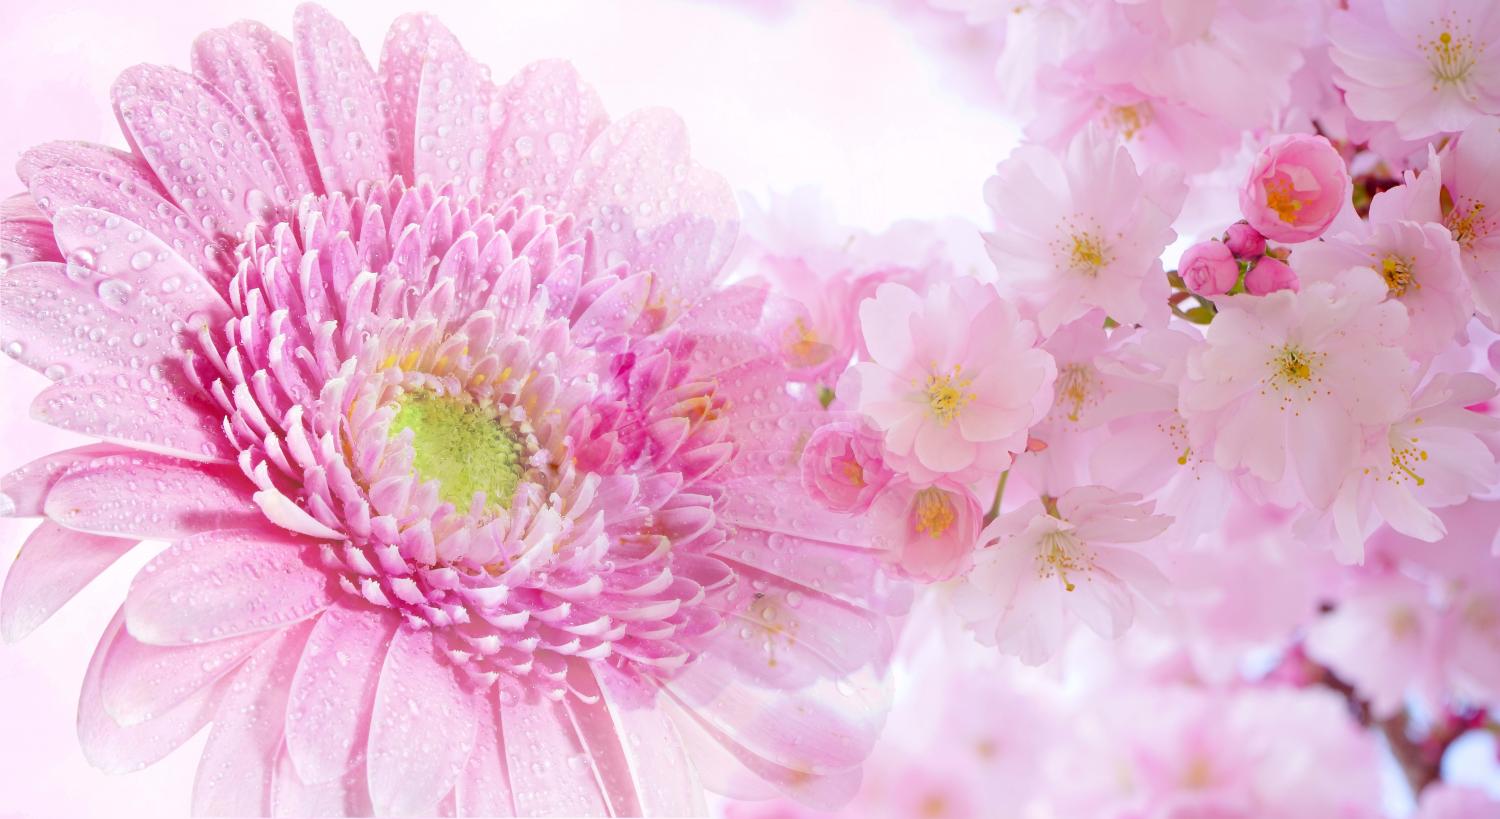 Quốc hoa Nhật Bản: Hoa Anh Đào hay Hoa Cúc?